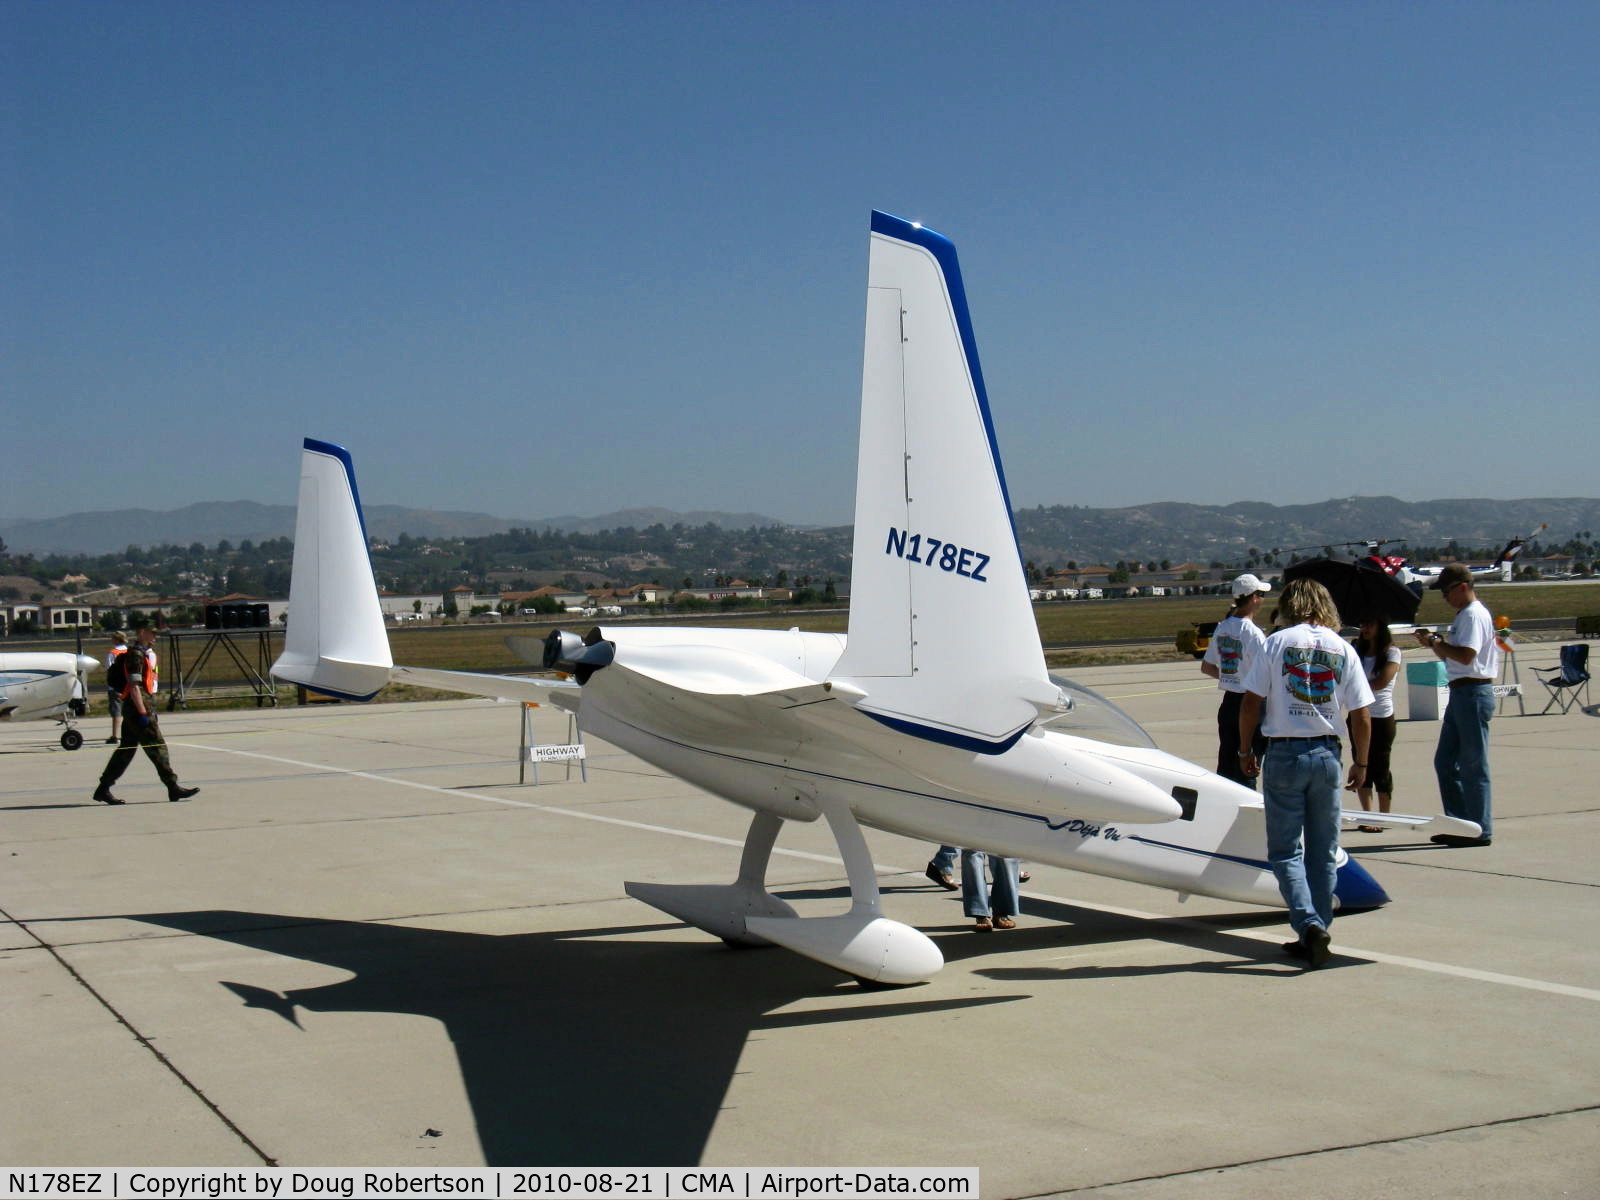 N178EZ, 2007 Rutan Long-Ez C/N 001, 2007 Stinemetze Rutan LONG EZE DEJA-VU canard, Lycoming O-320-D3G 160 Hp pusher